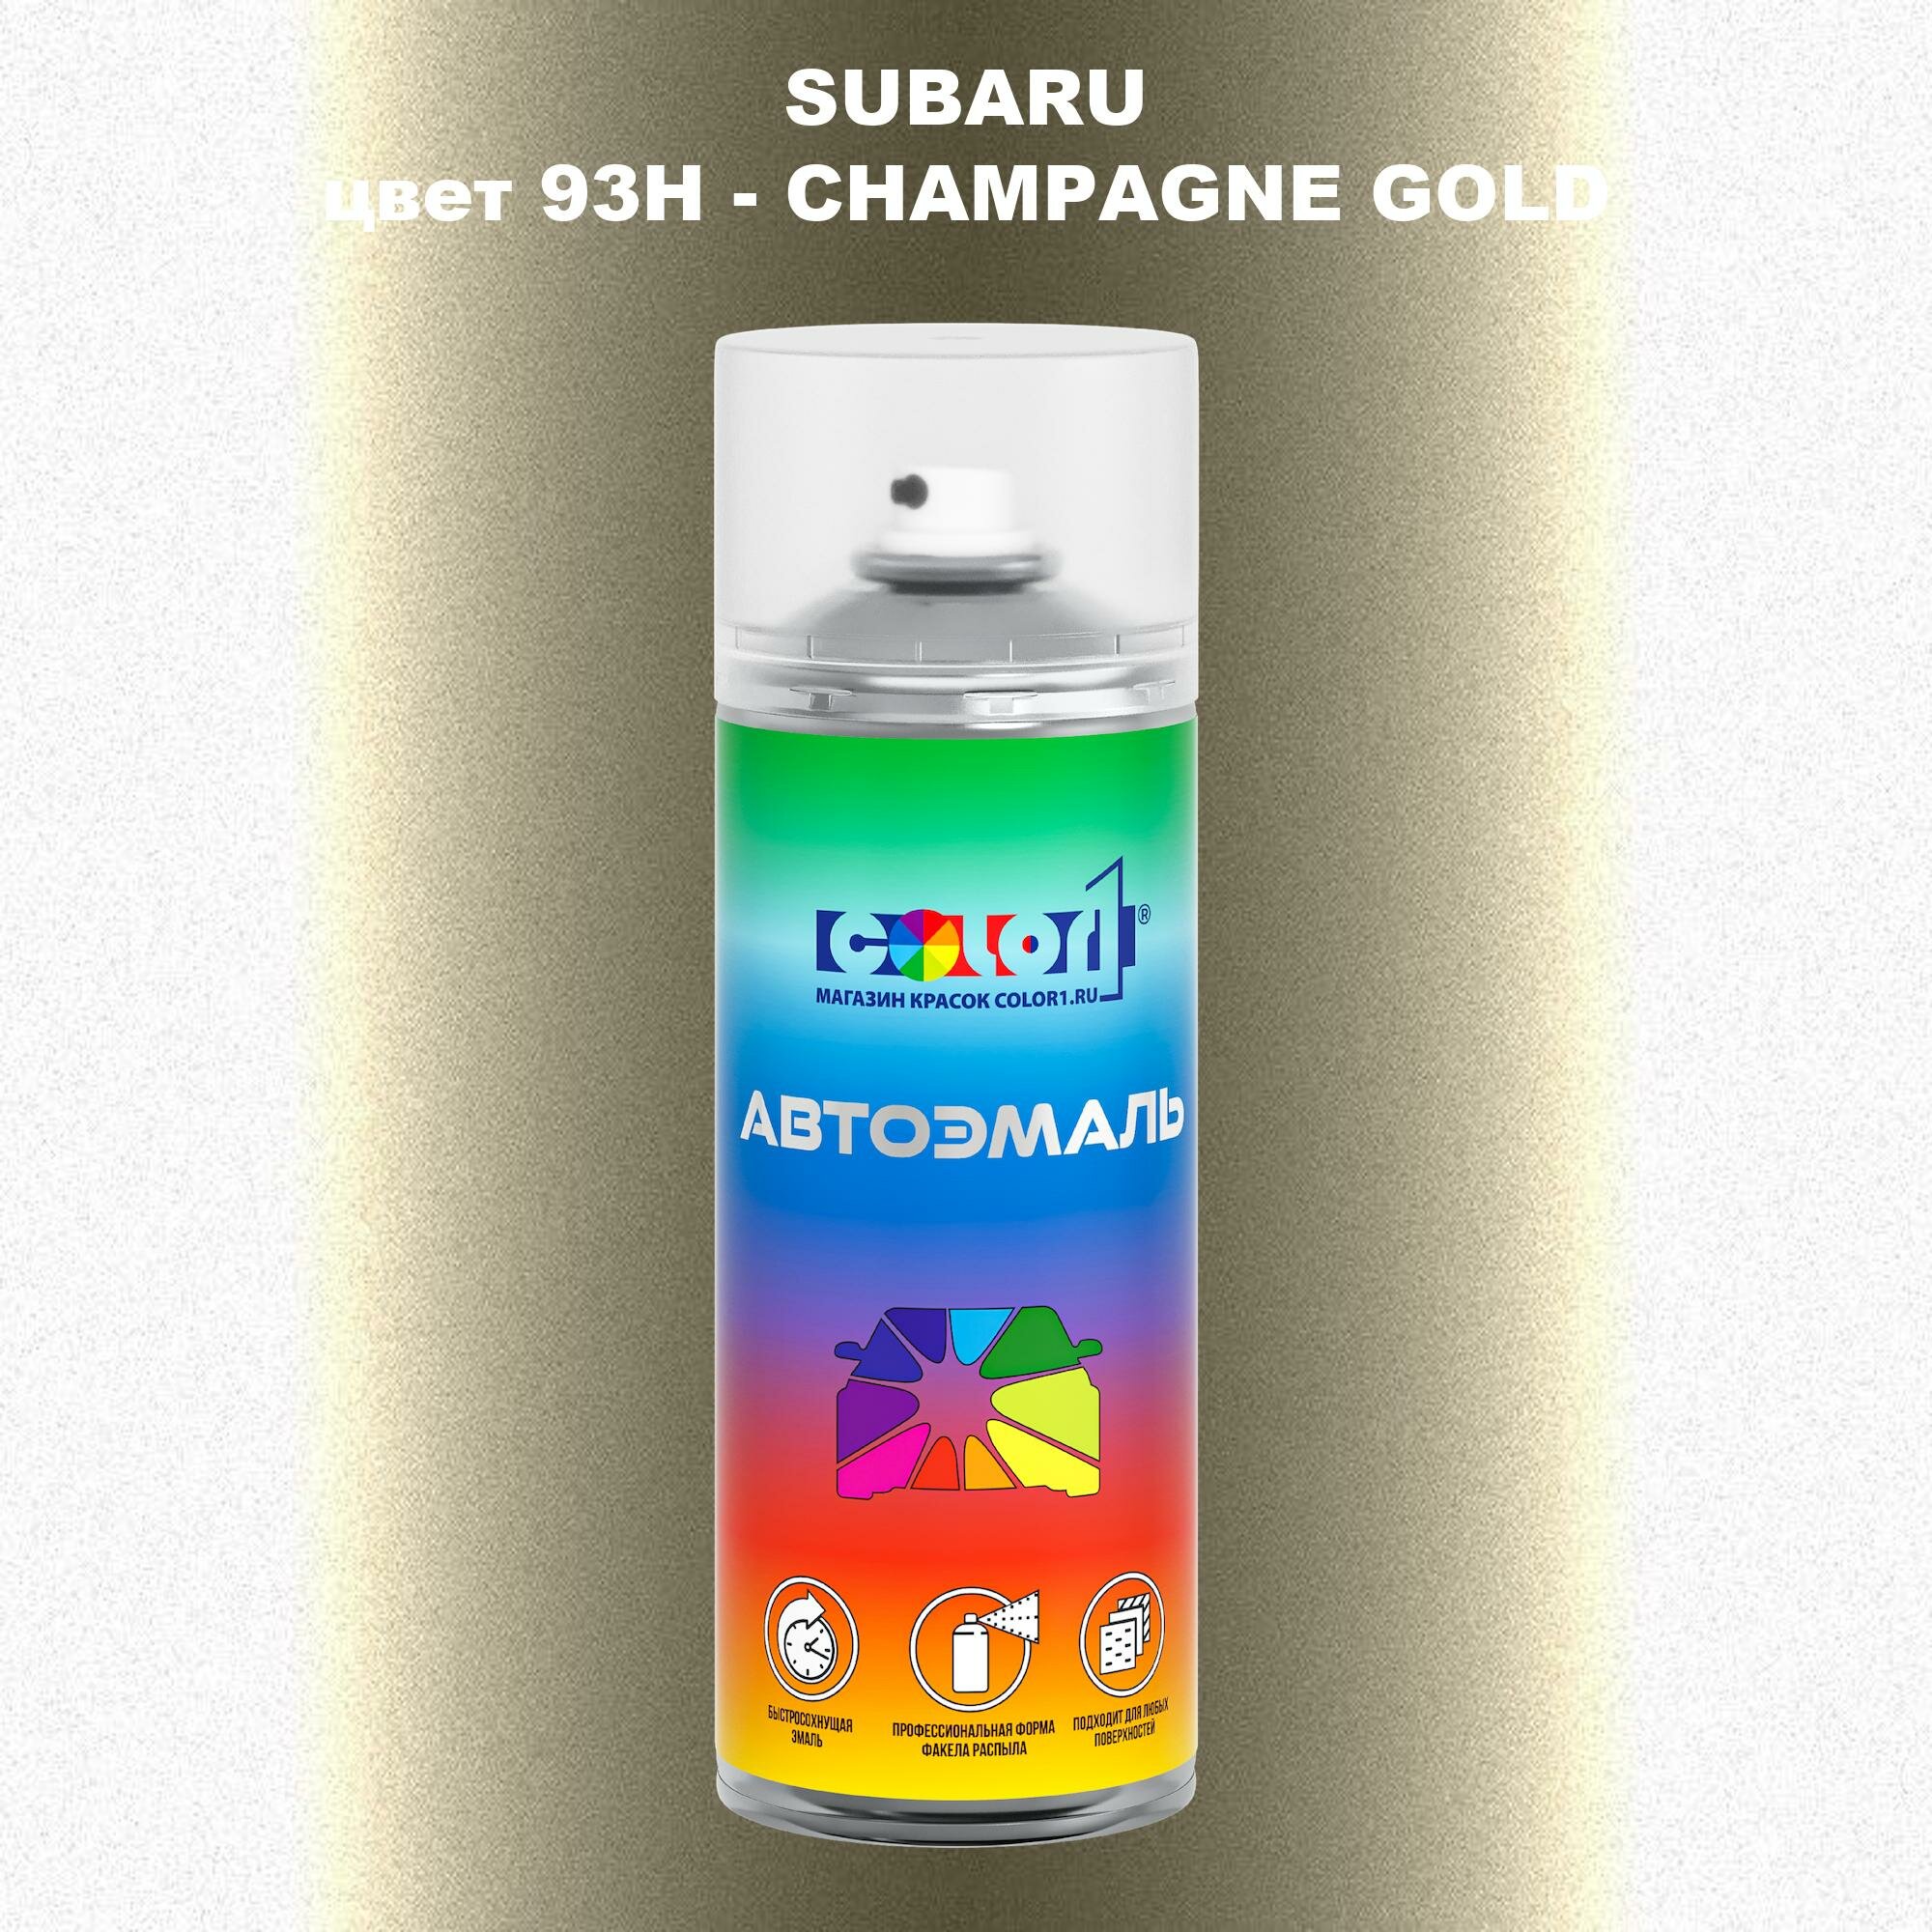 Аэрозольная краска COLOR1 для SUBARU, цвет 93H - CHAMPAGNE GOLD